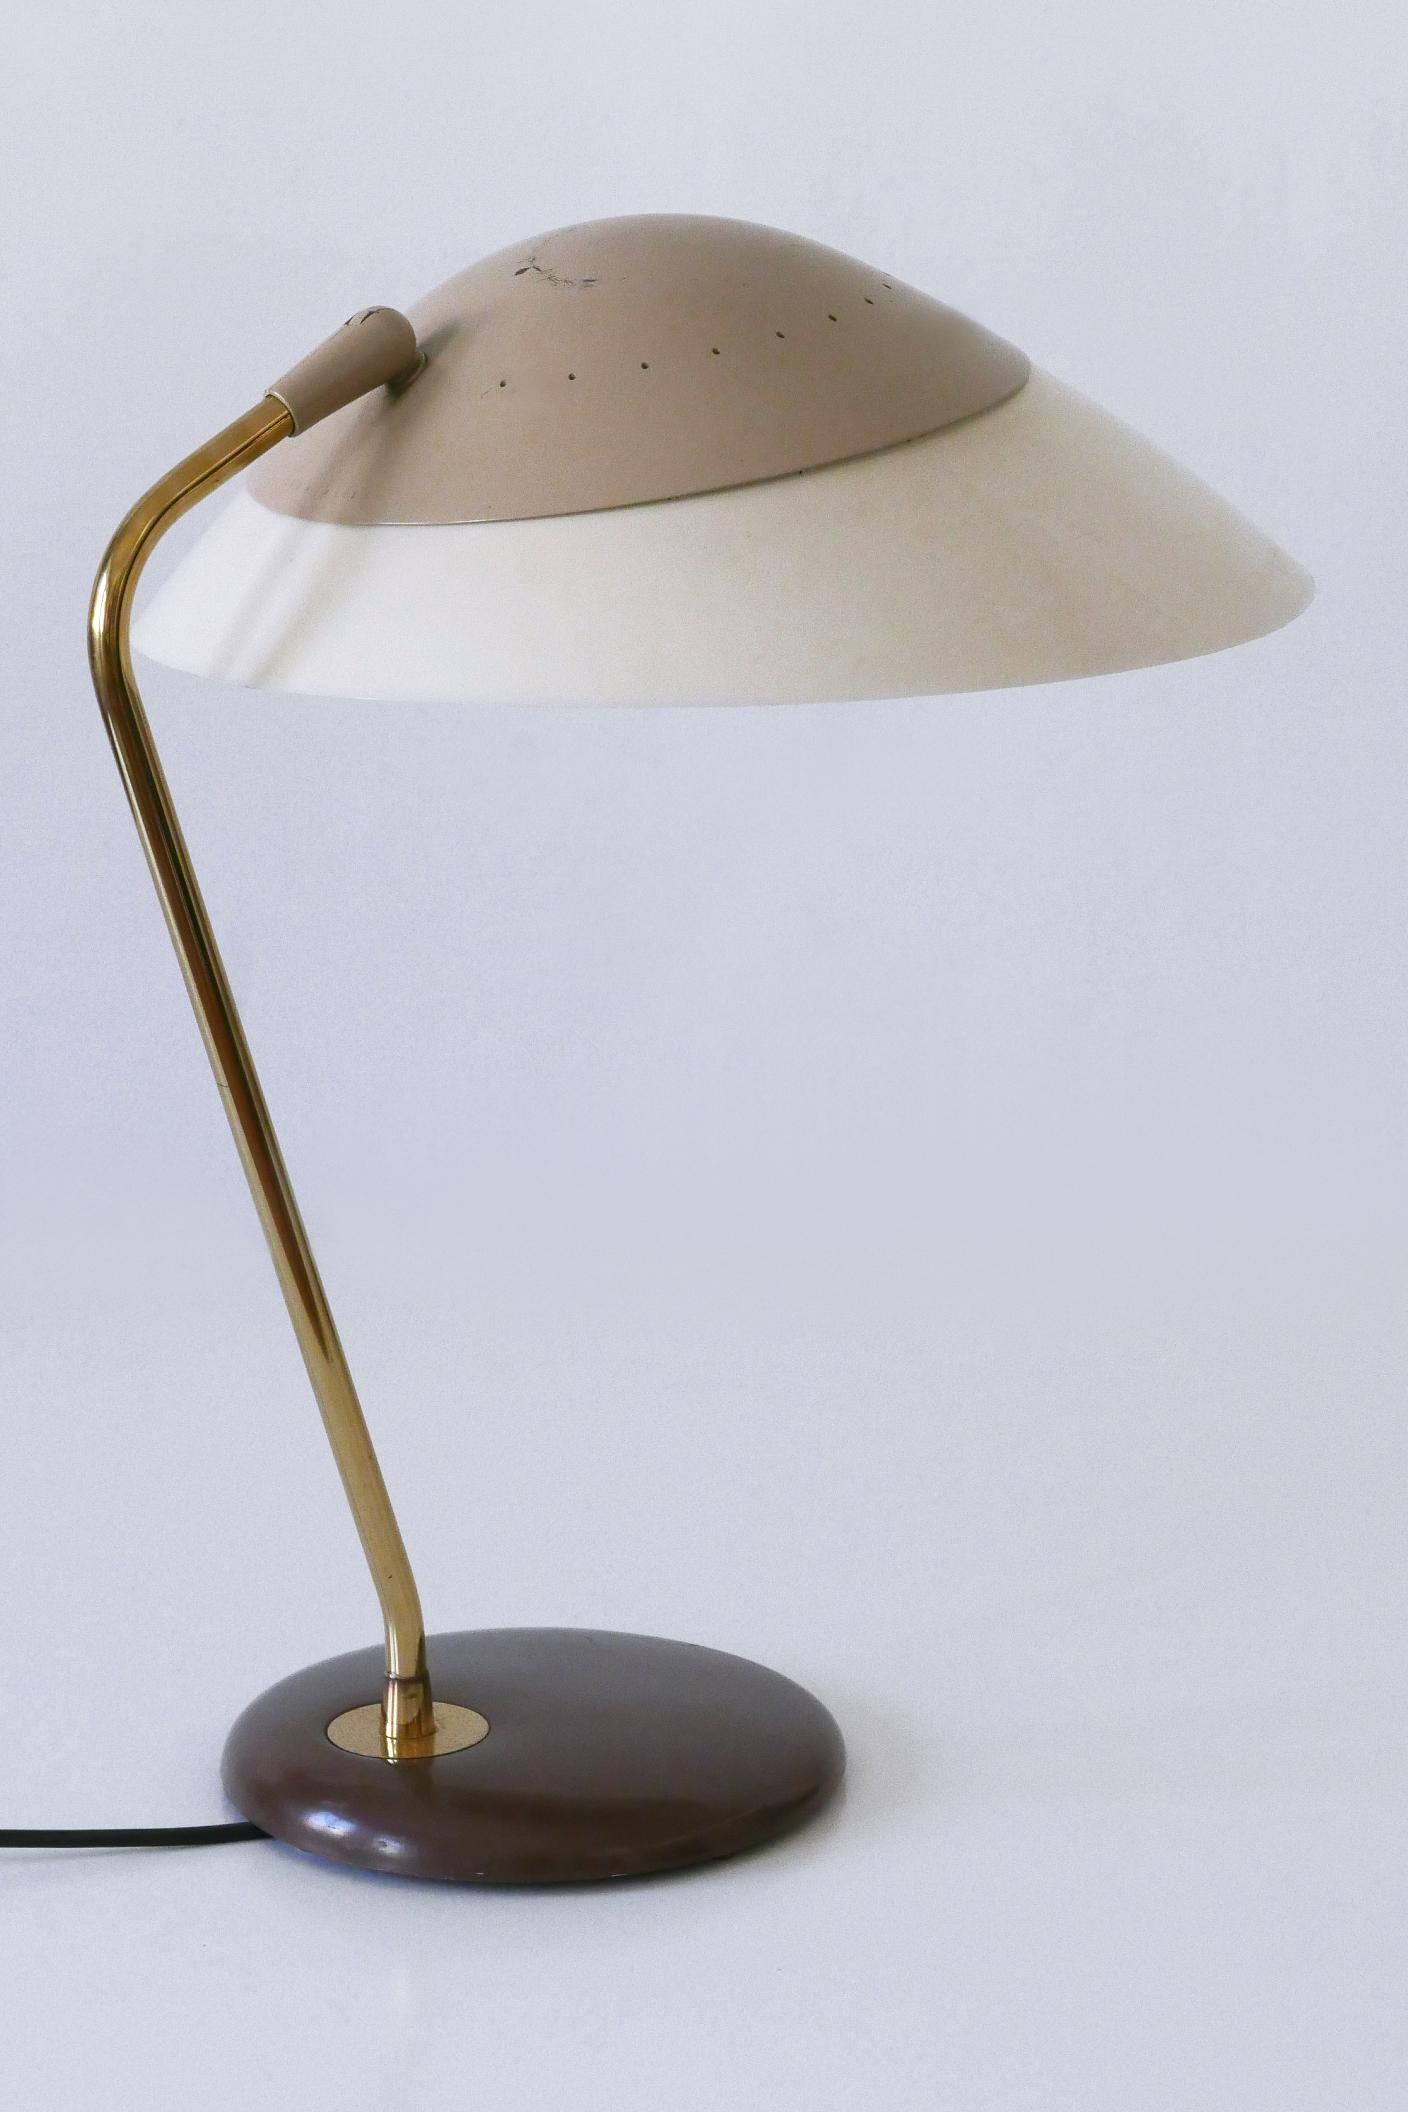 Elegant Table Lamp or Desk Light by Gerald Thurston for Lightolier USA 1950s For Sale 2